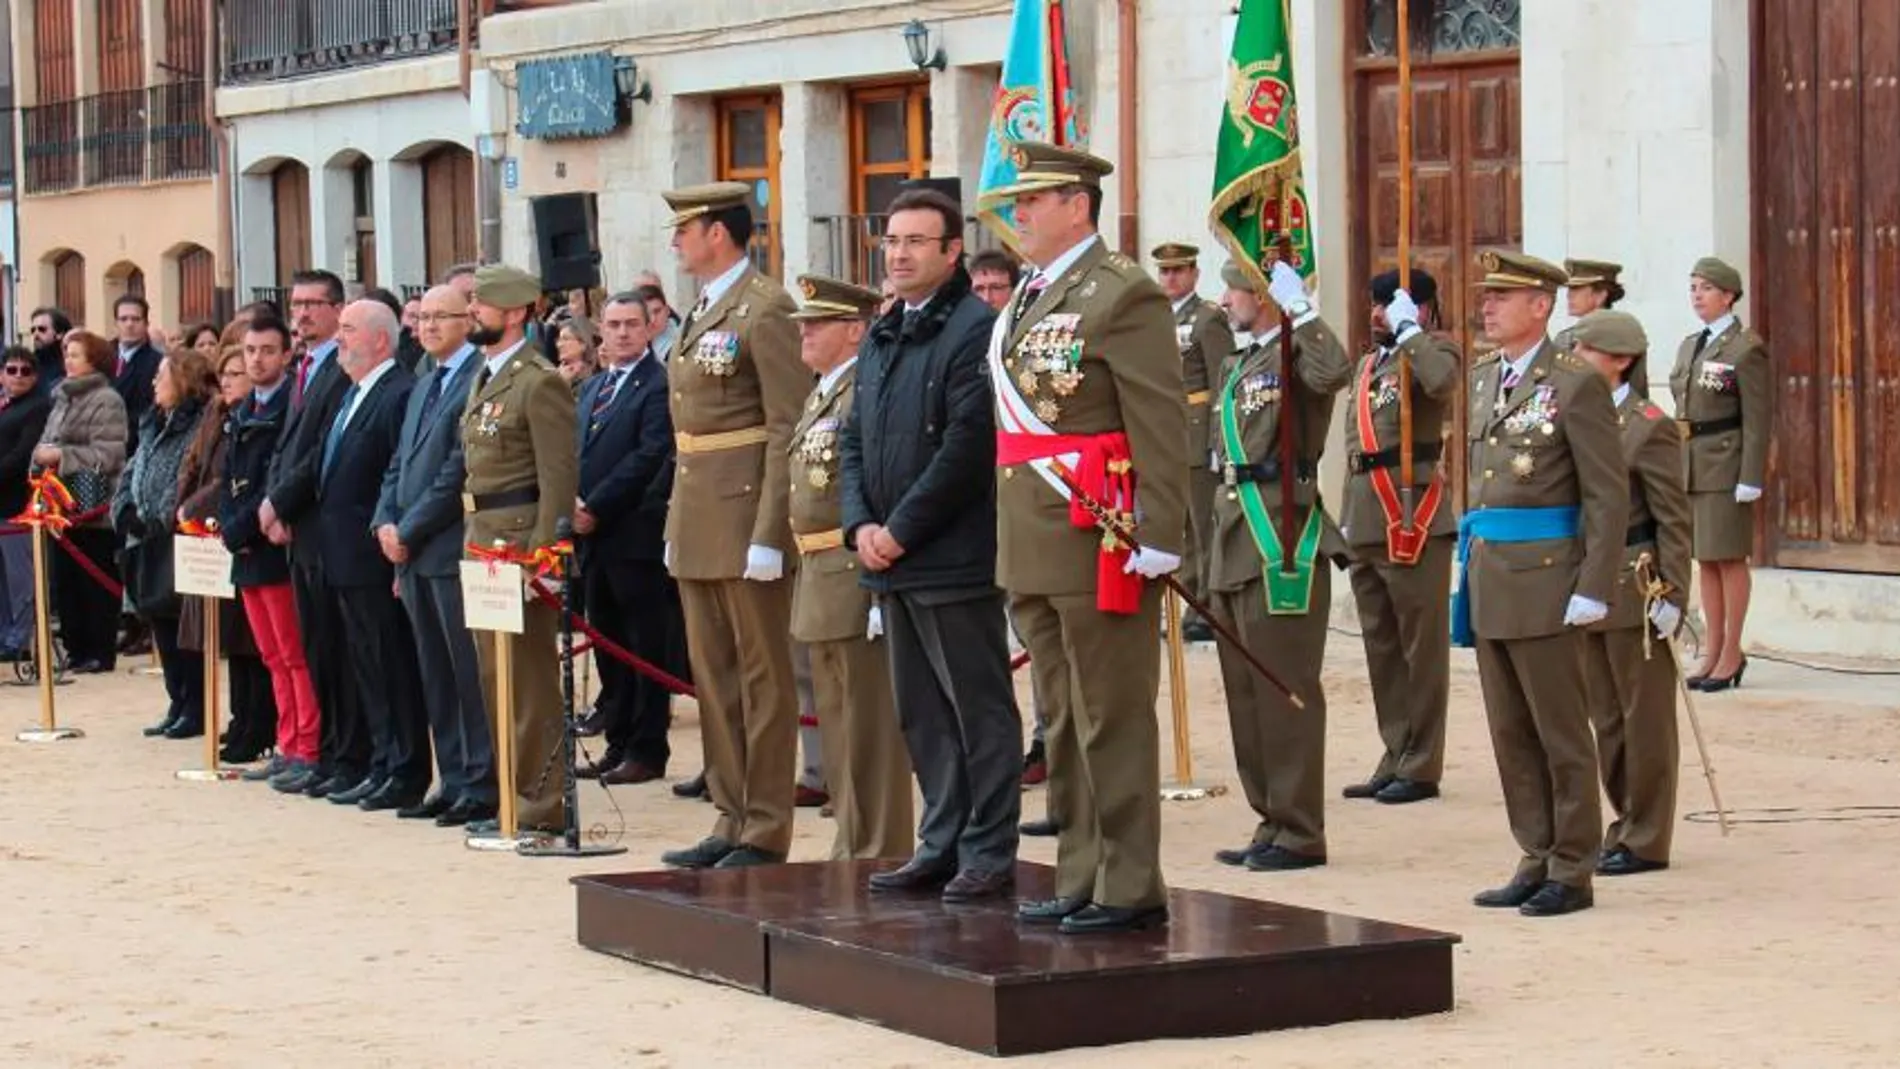 El general José Rivas Moriana, Jefe de la Cuarta Subinspección General del Ejército y Comandante militar de Valladolid y Palencia, acompañado por el alcalde de Peñafiel, Roberto Díez, preside el acto